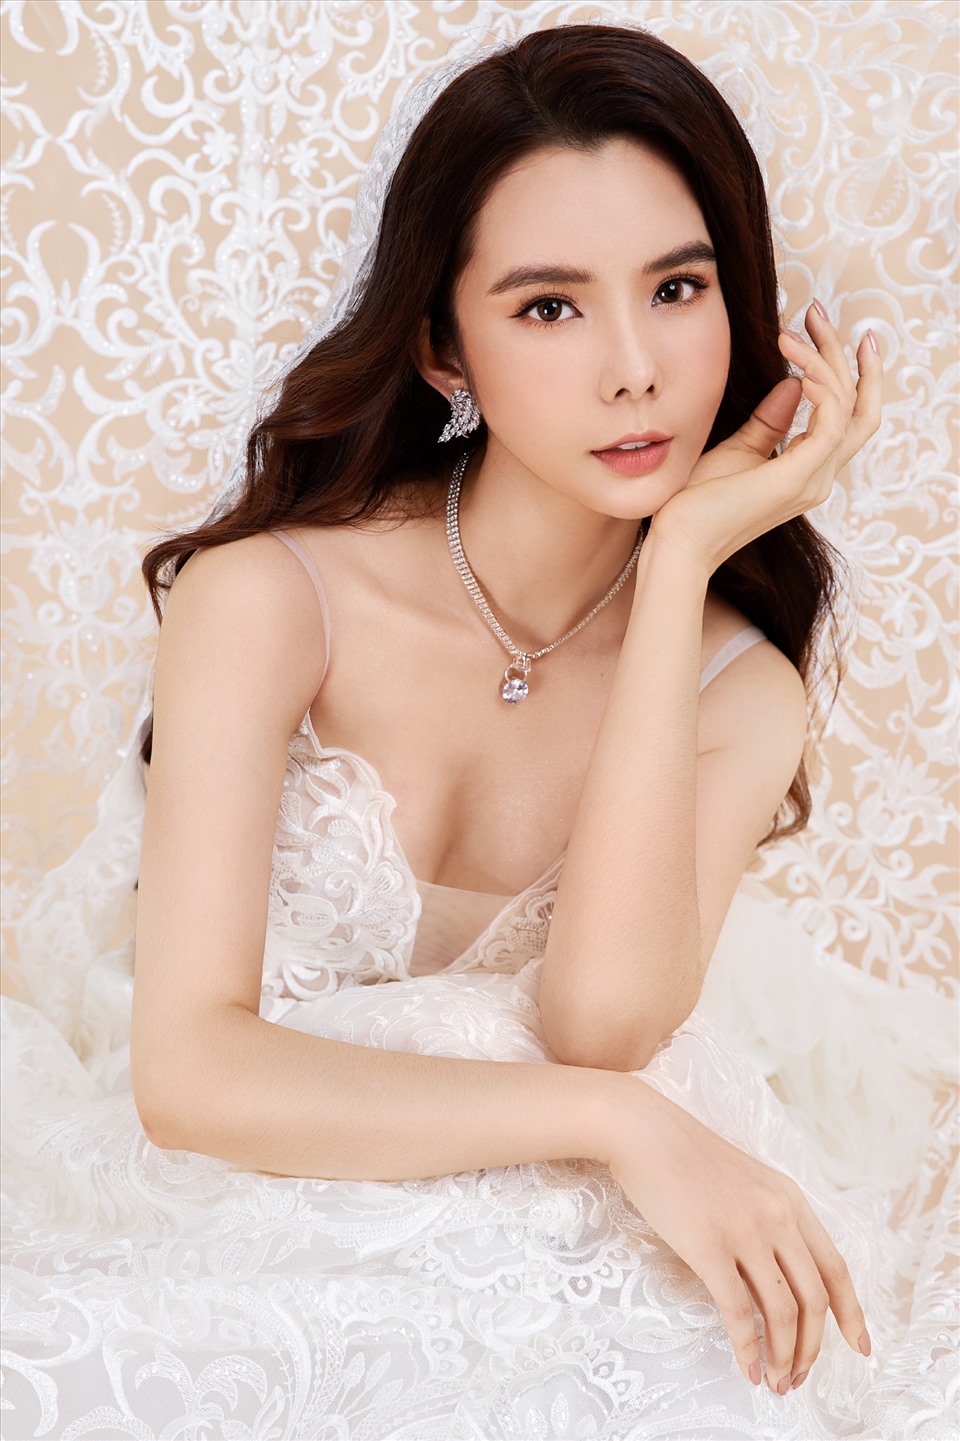 Ngoài vai trò là một hoa hậu quốc tế thành công, Huỳnh Vy còn là một người đẹp có kinh nghiệm kinh doanh ở lĩnh vực bất động sản và chứng khoán. Ảnh: NSCC.